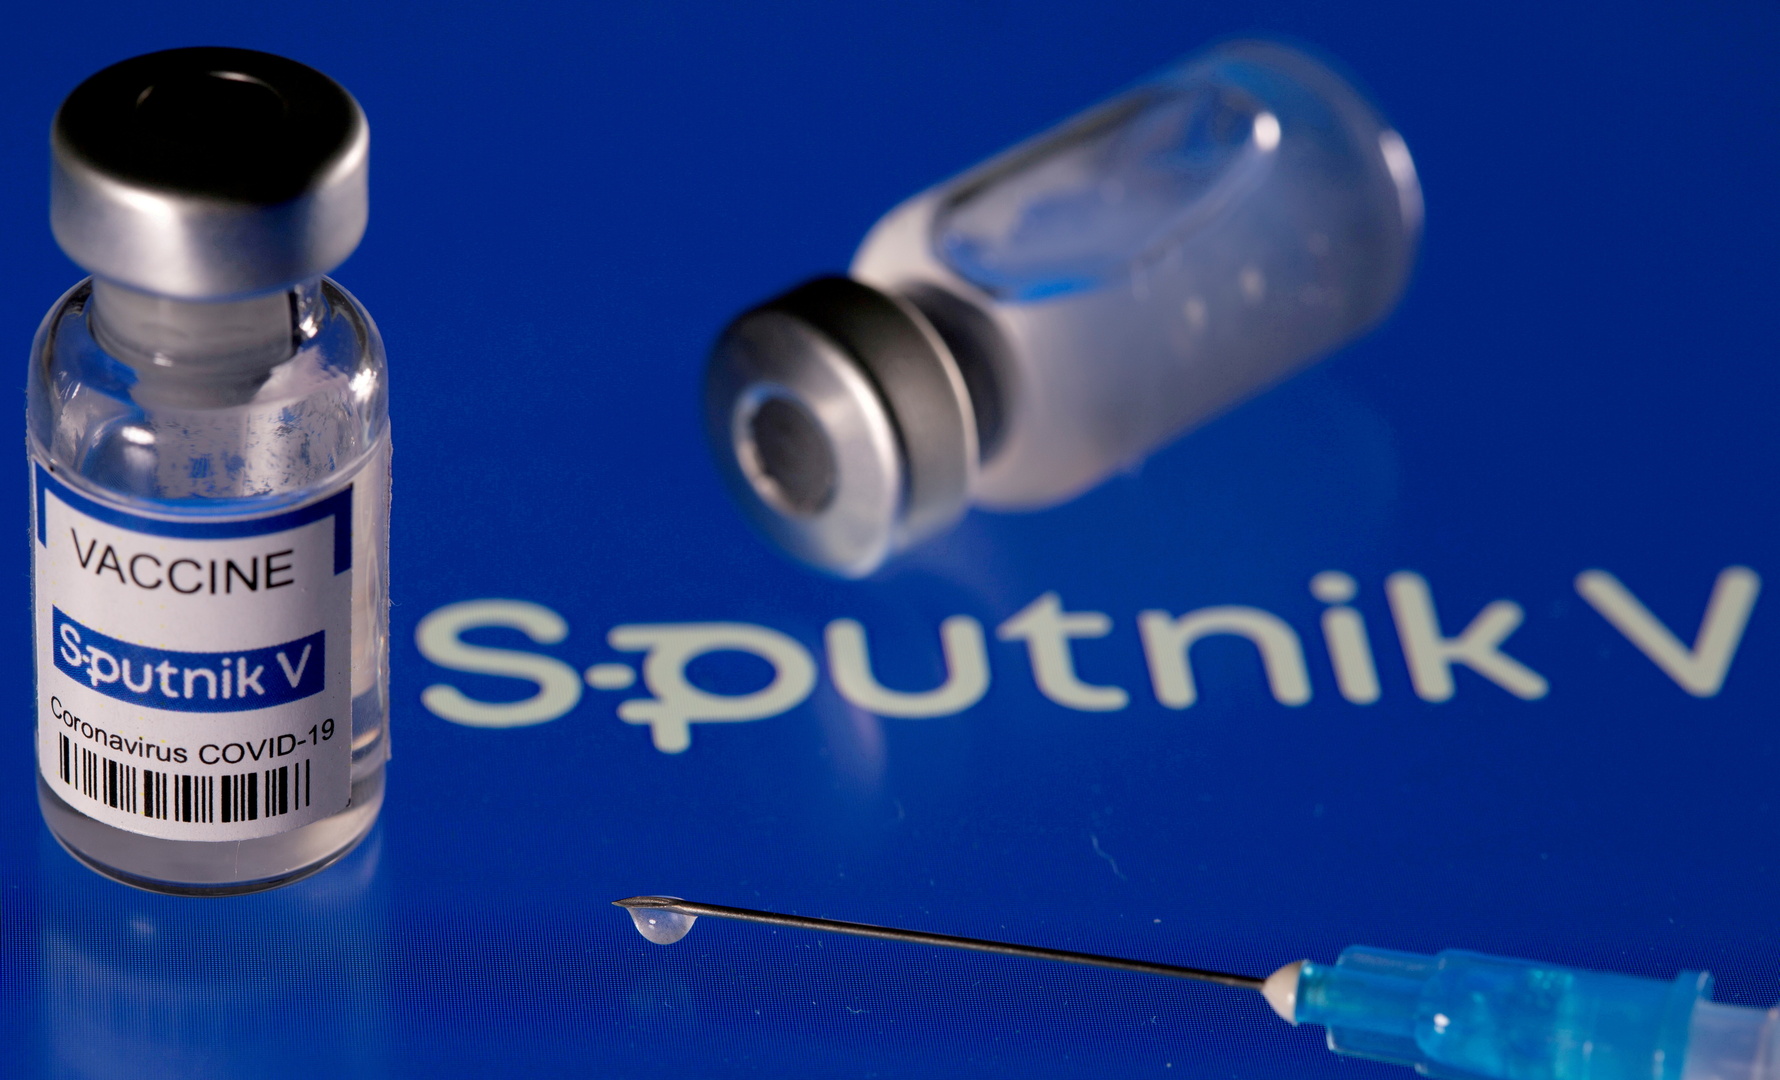 بمناسبة مرور عام على تسجيل "سبوتنيك V".. عشر حقائق مؤكدة عن اللقاح